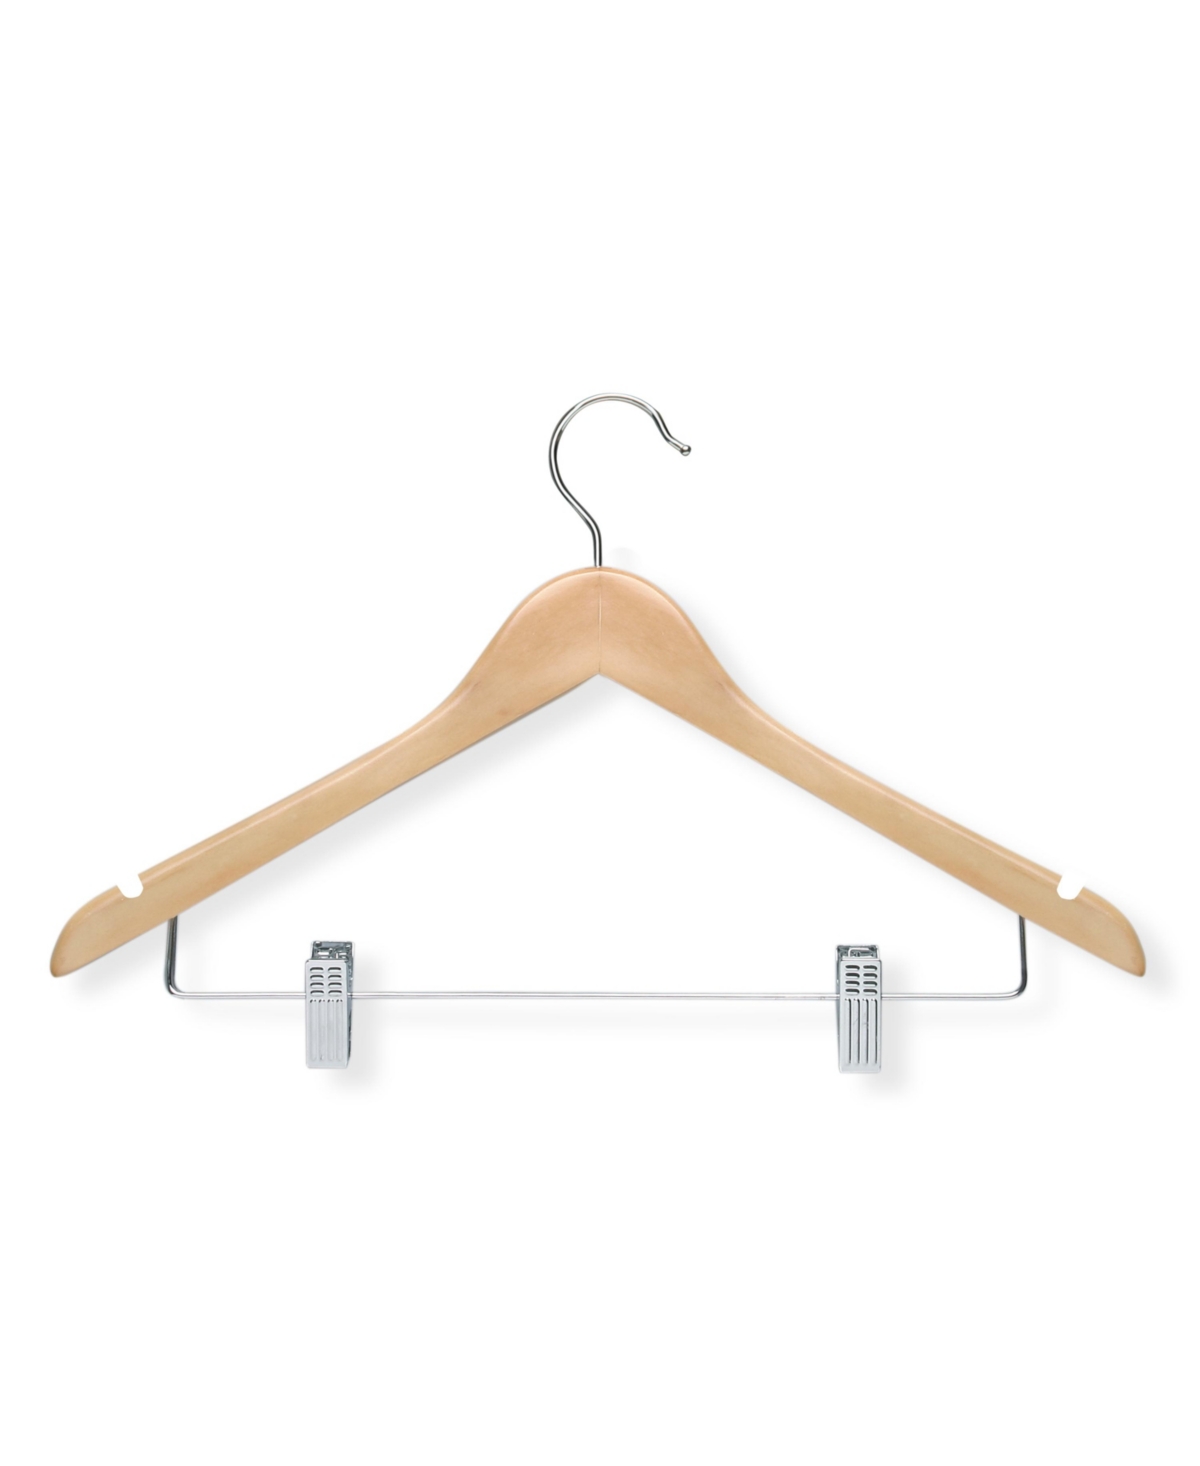 Suits Wooden Maple Clip Hangers, Set of 12 - Beige